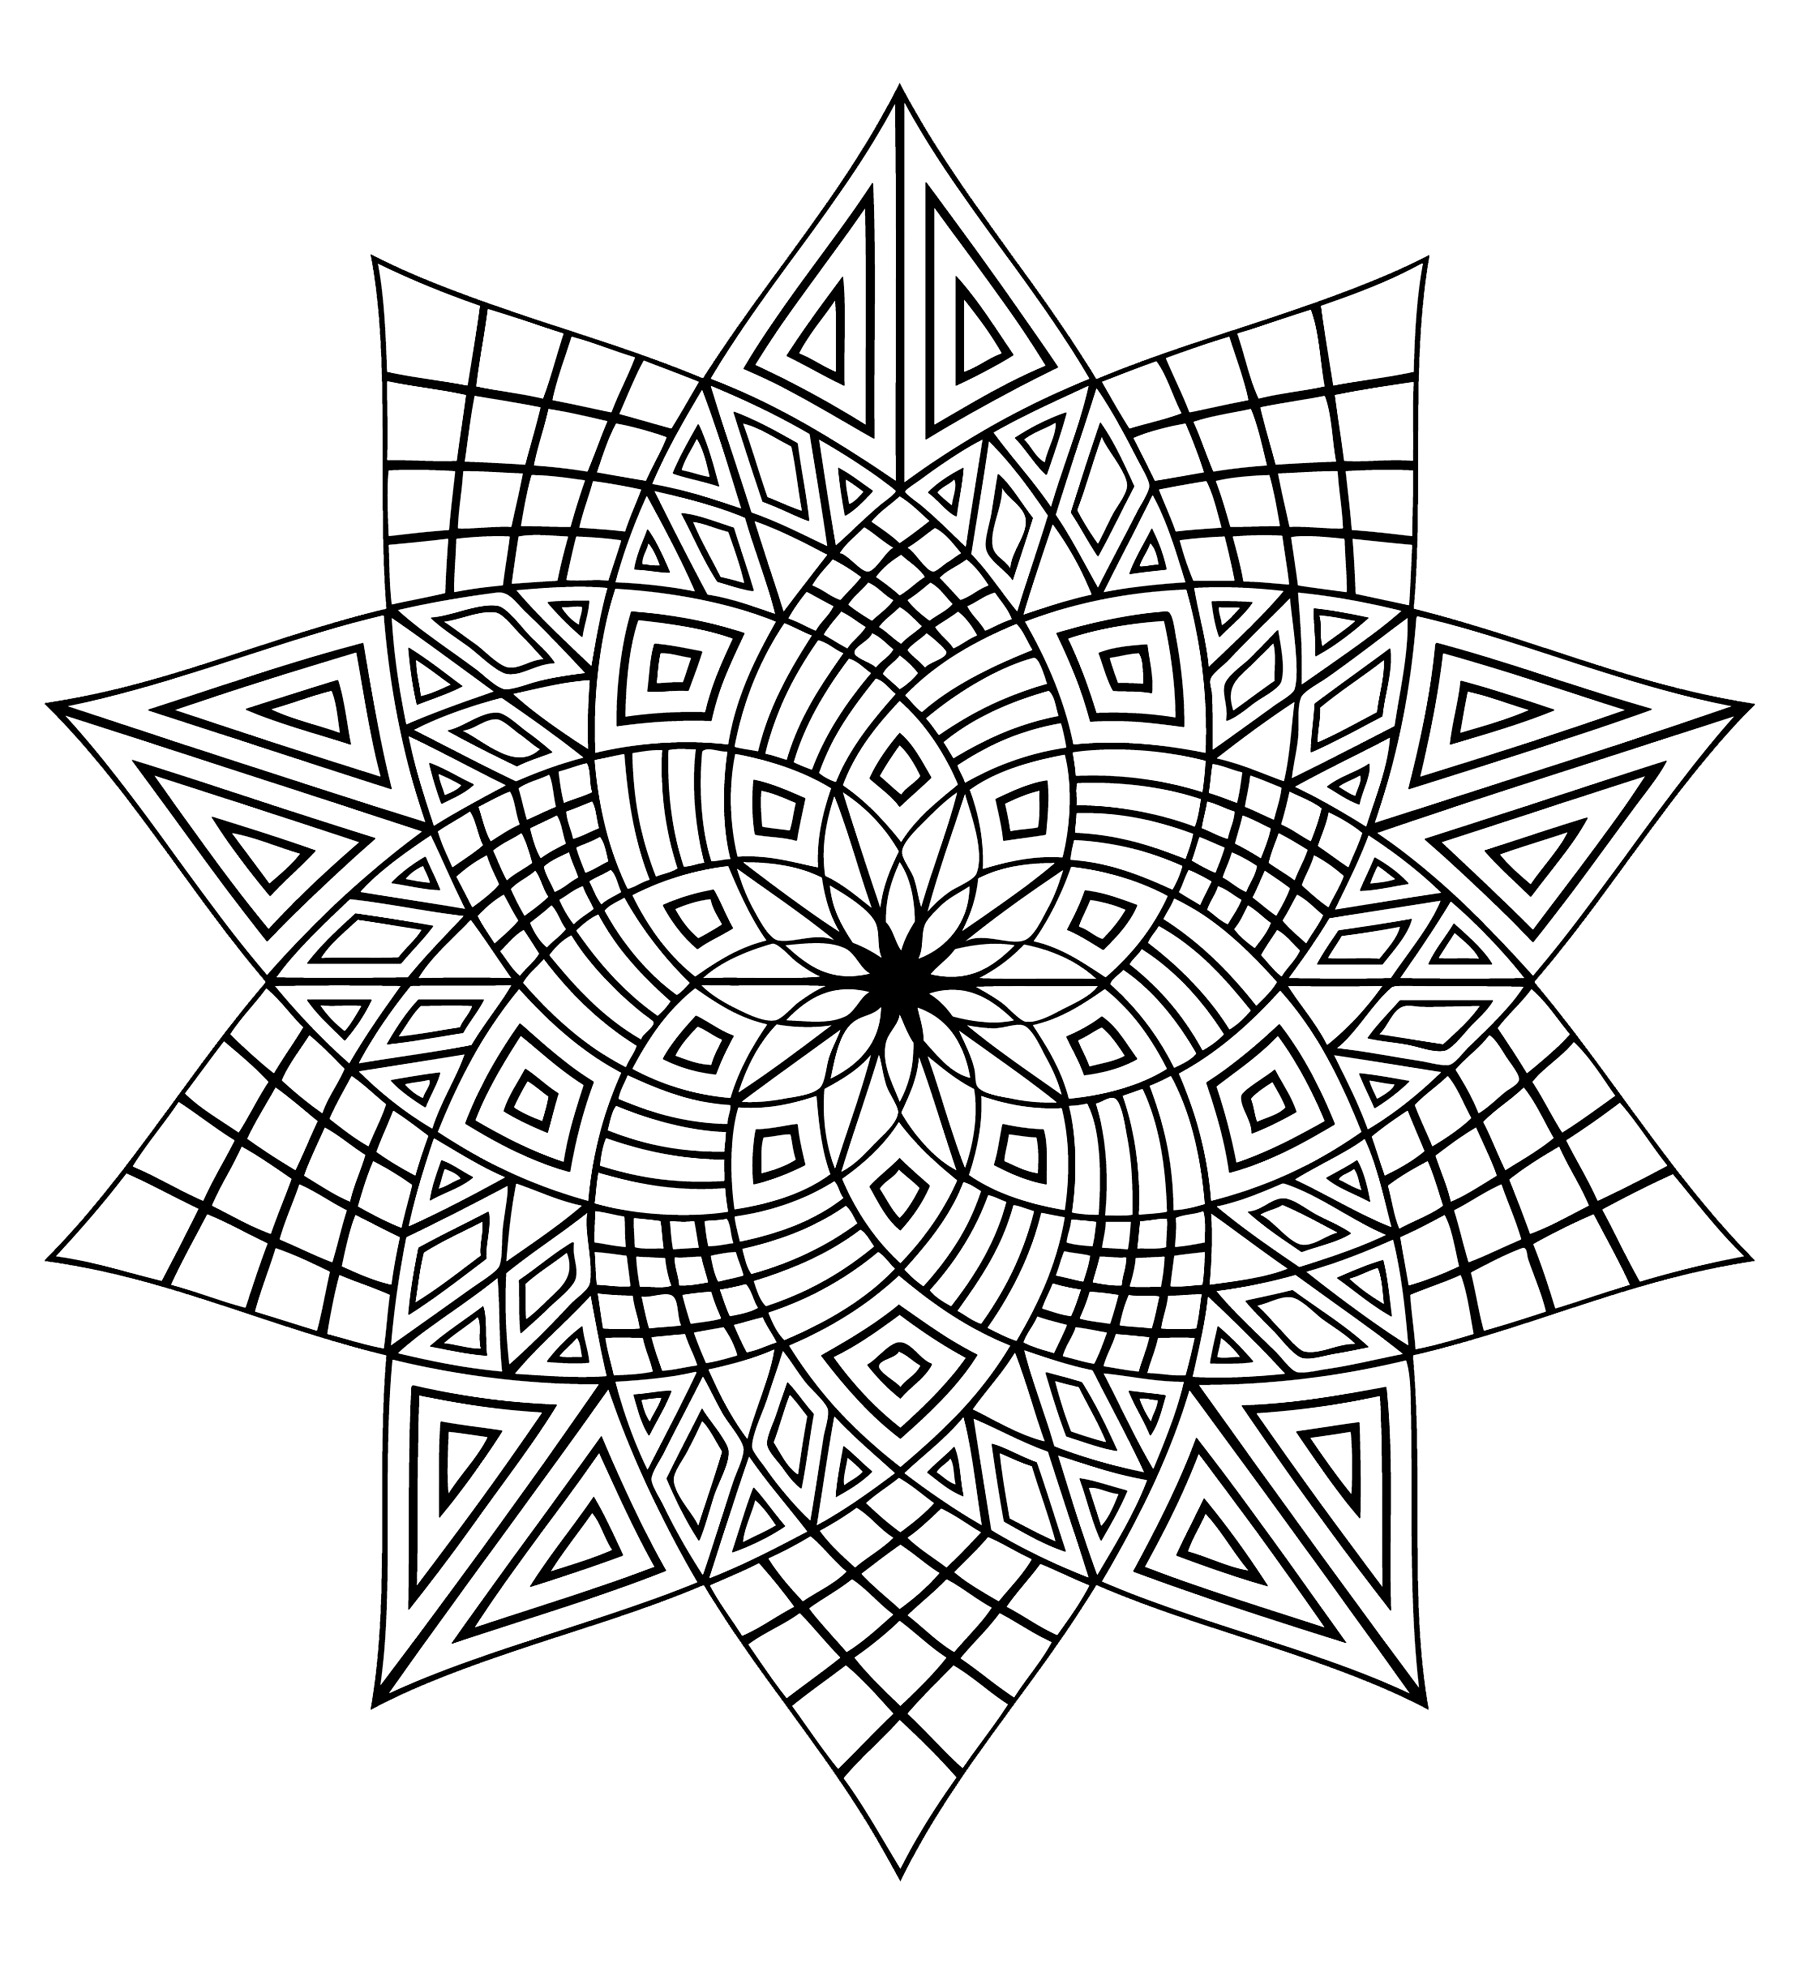 Mandala à colorier avec différentes formes géométriques telles que plusieurs triangles. Nous pouvons, de plus, percevoir une très jolie fleur au centre.